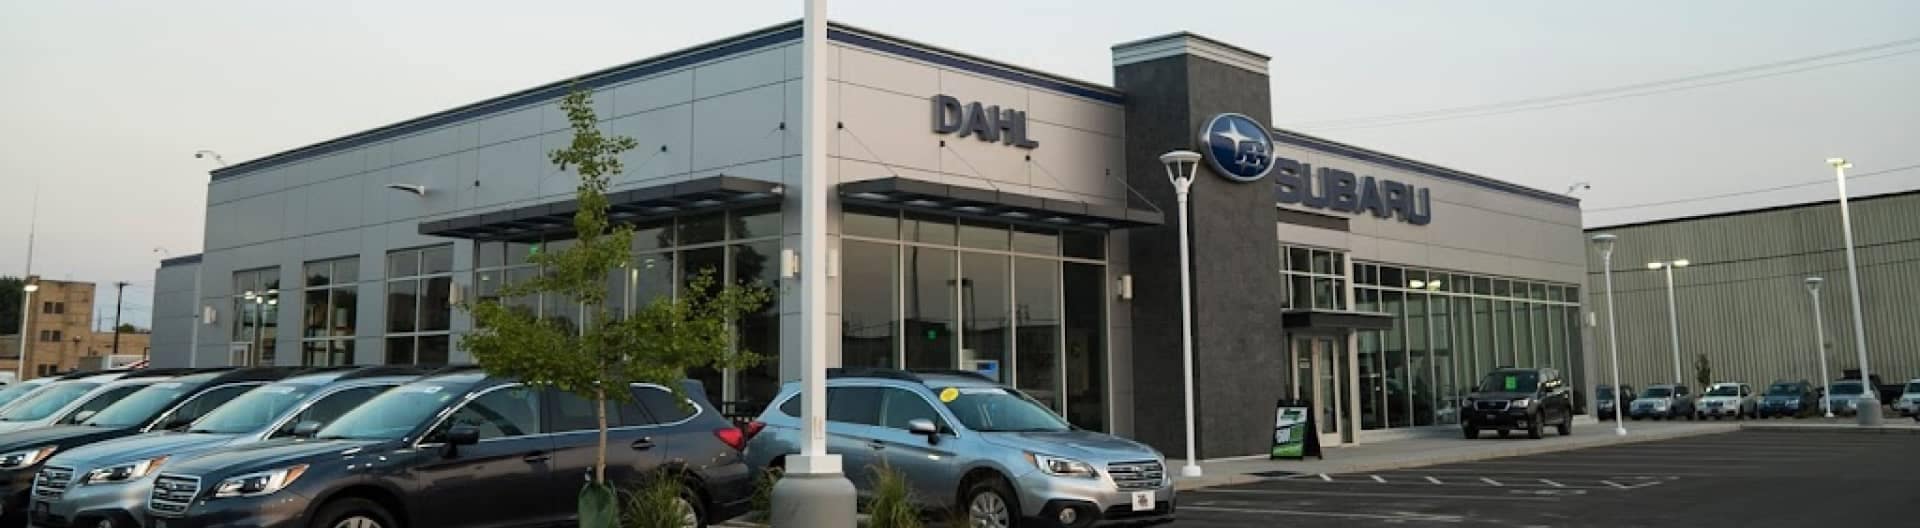 Dahl Subaru dealership